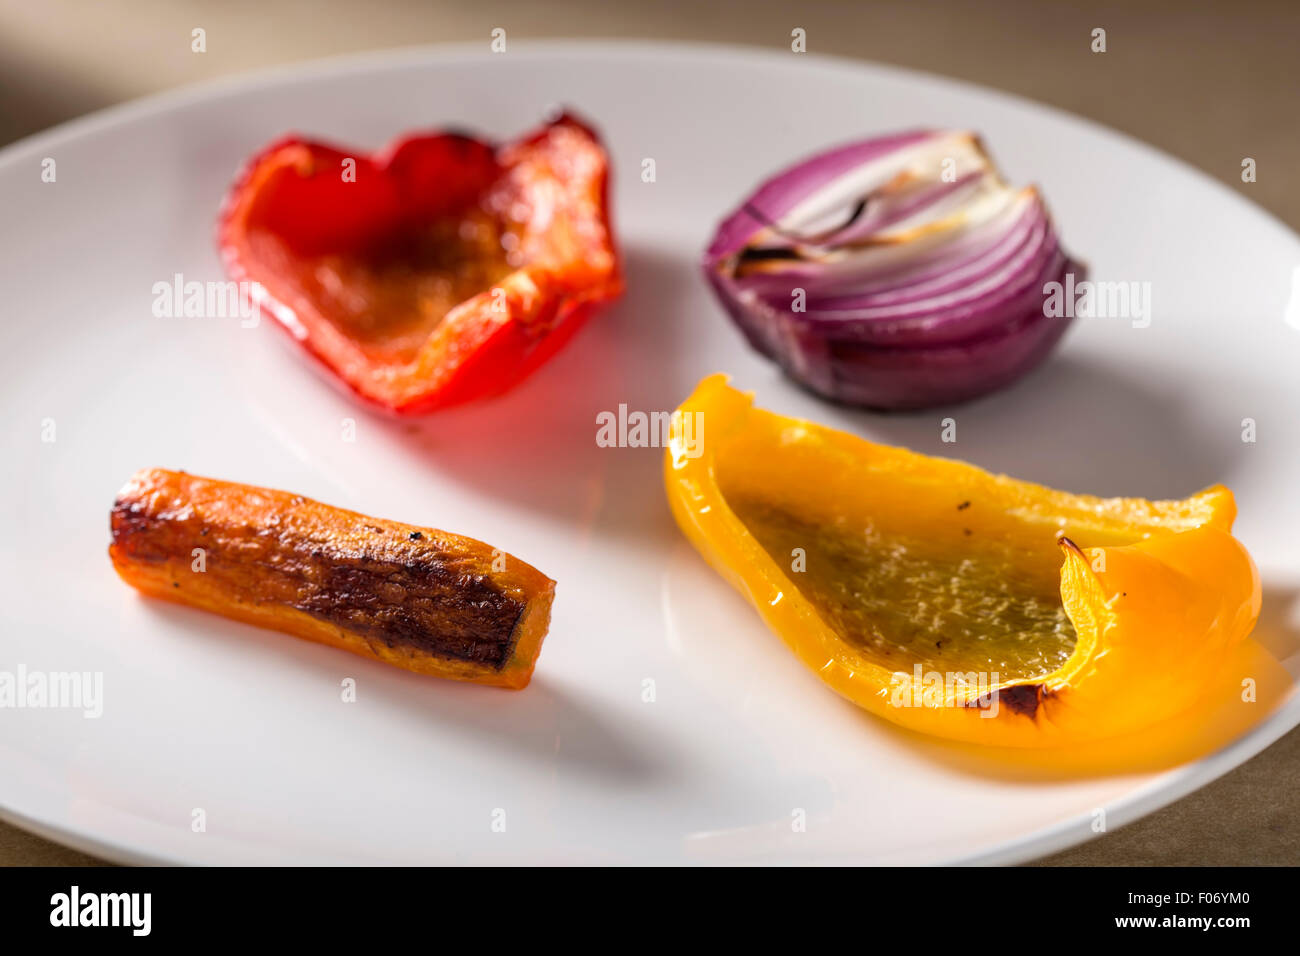 Des légumes grillés sur une assiette blanche. Carottes, oignons rouges, poivrons rouge et jaune Banque D'Images